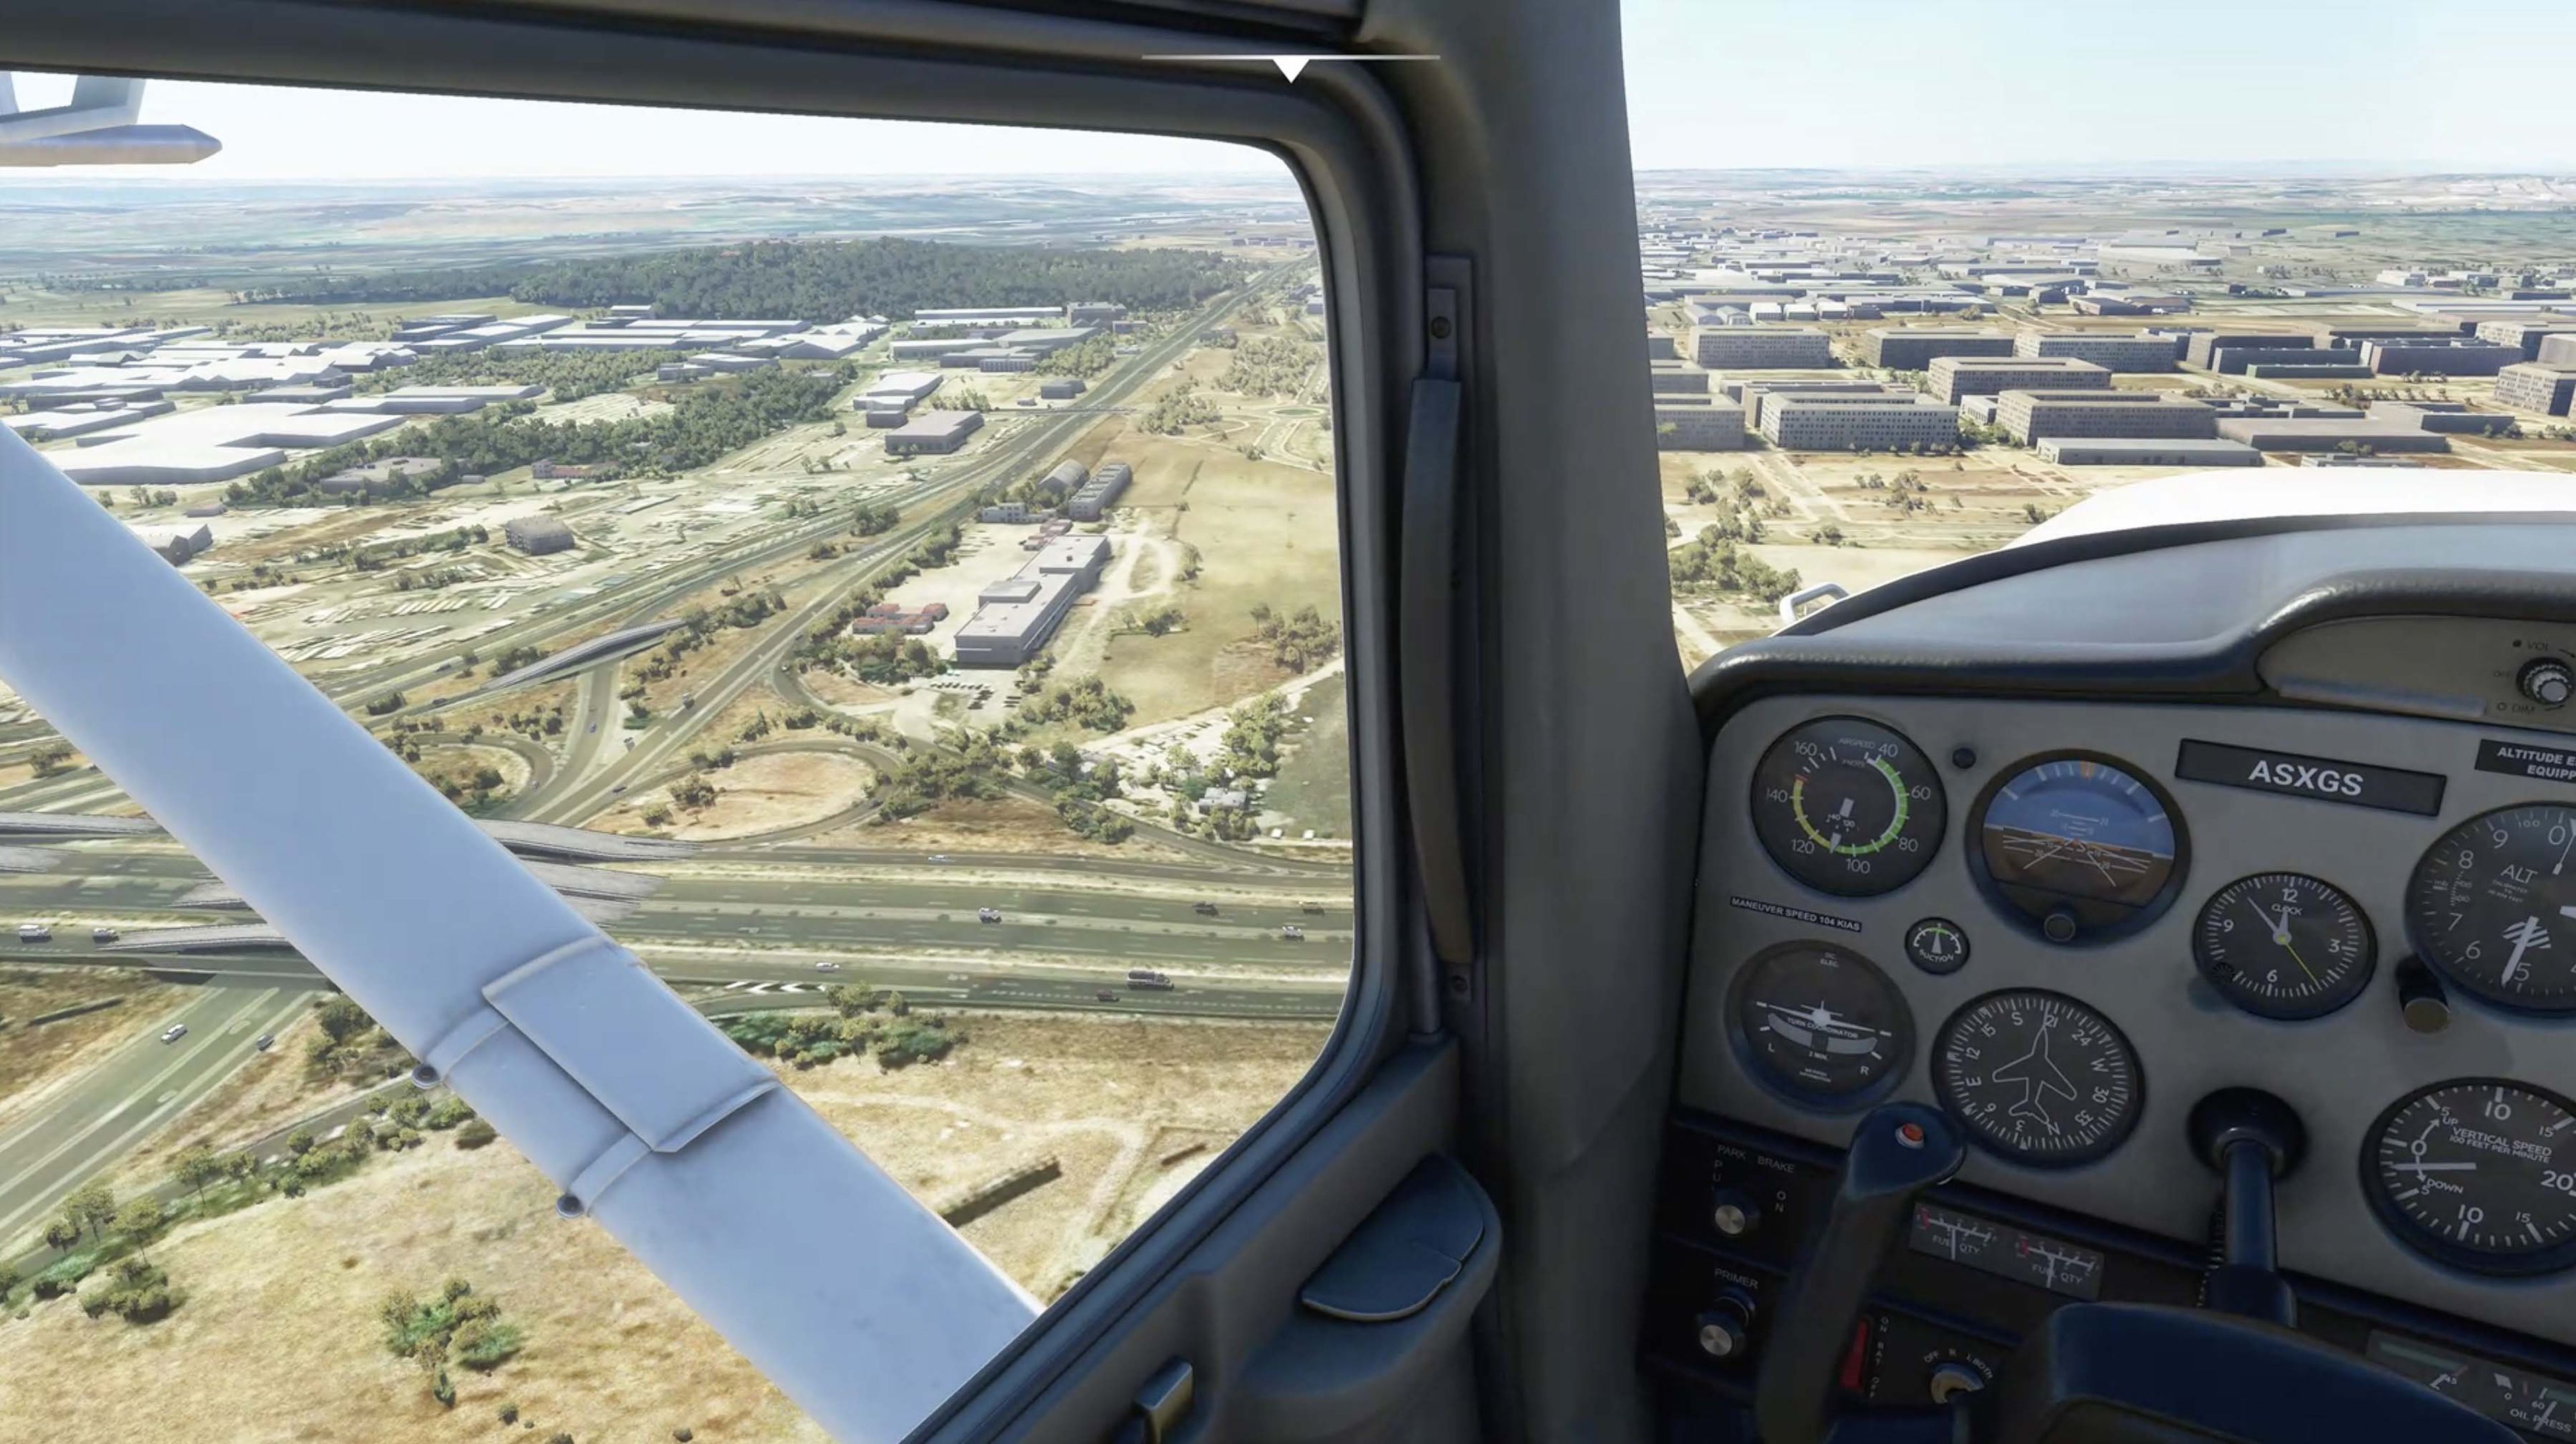 Flight Simulator 2020', análisis: la experiencia con el simulador de vuelo  más realista contada por alguien